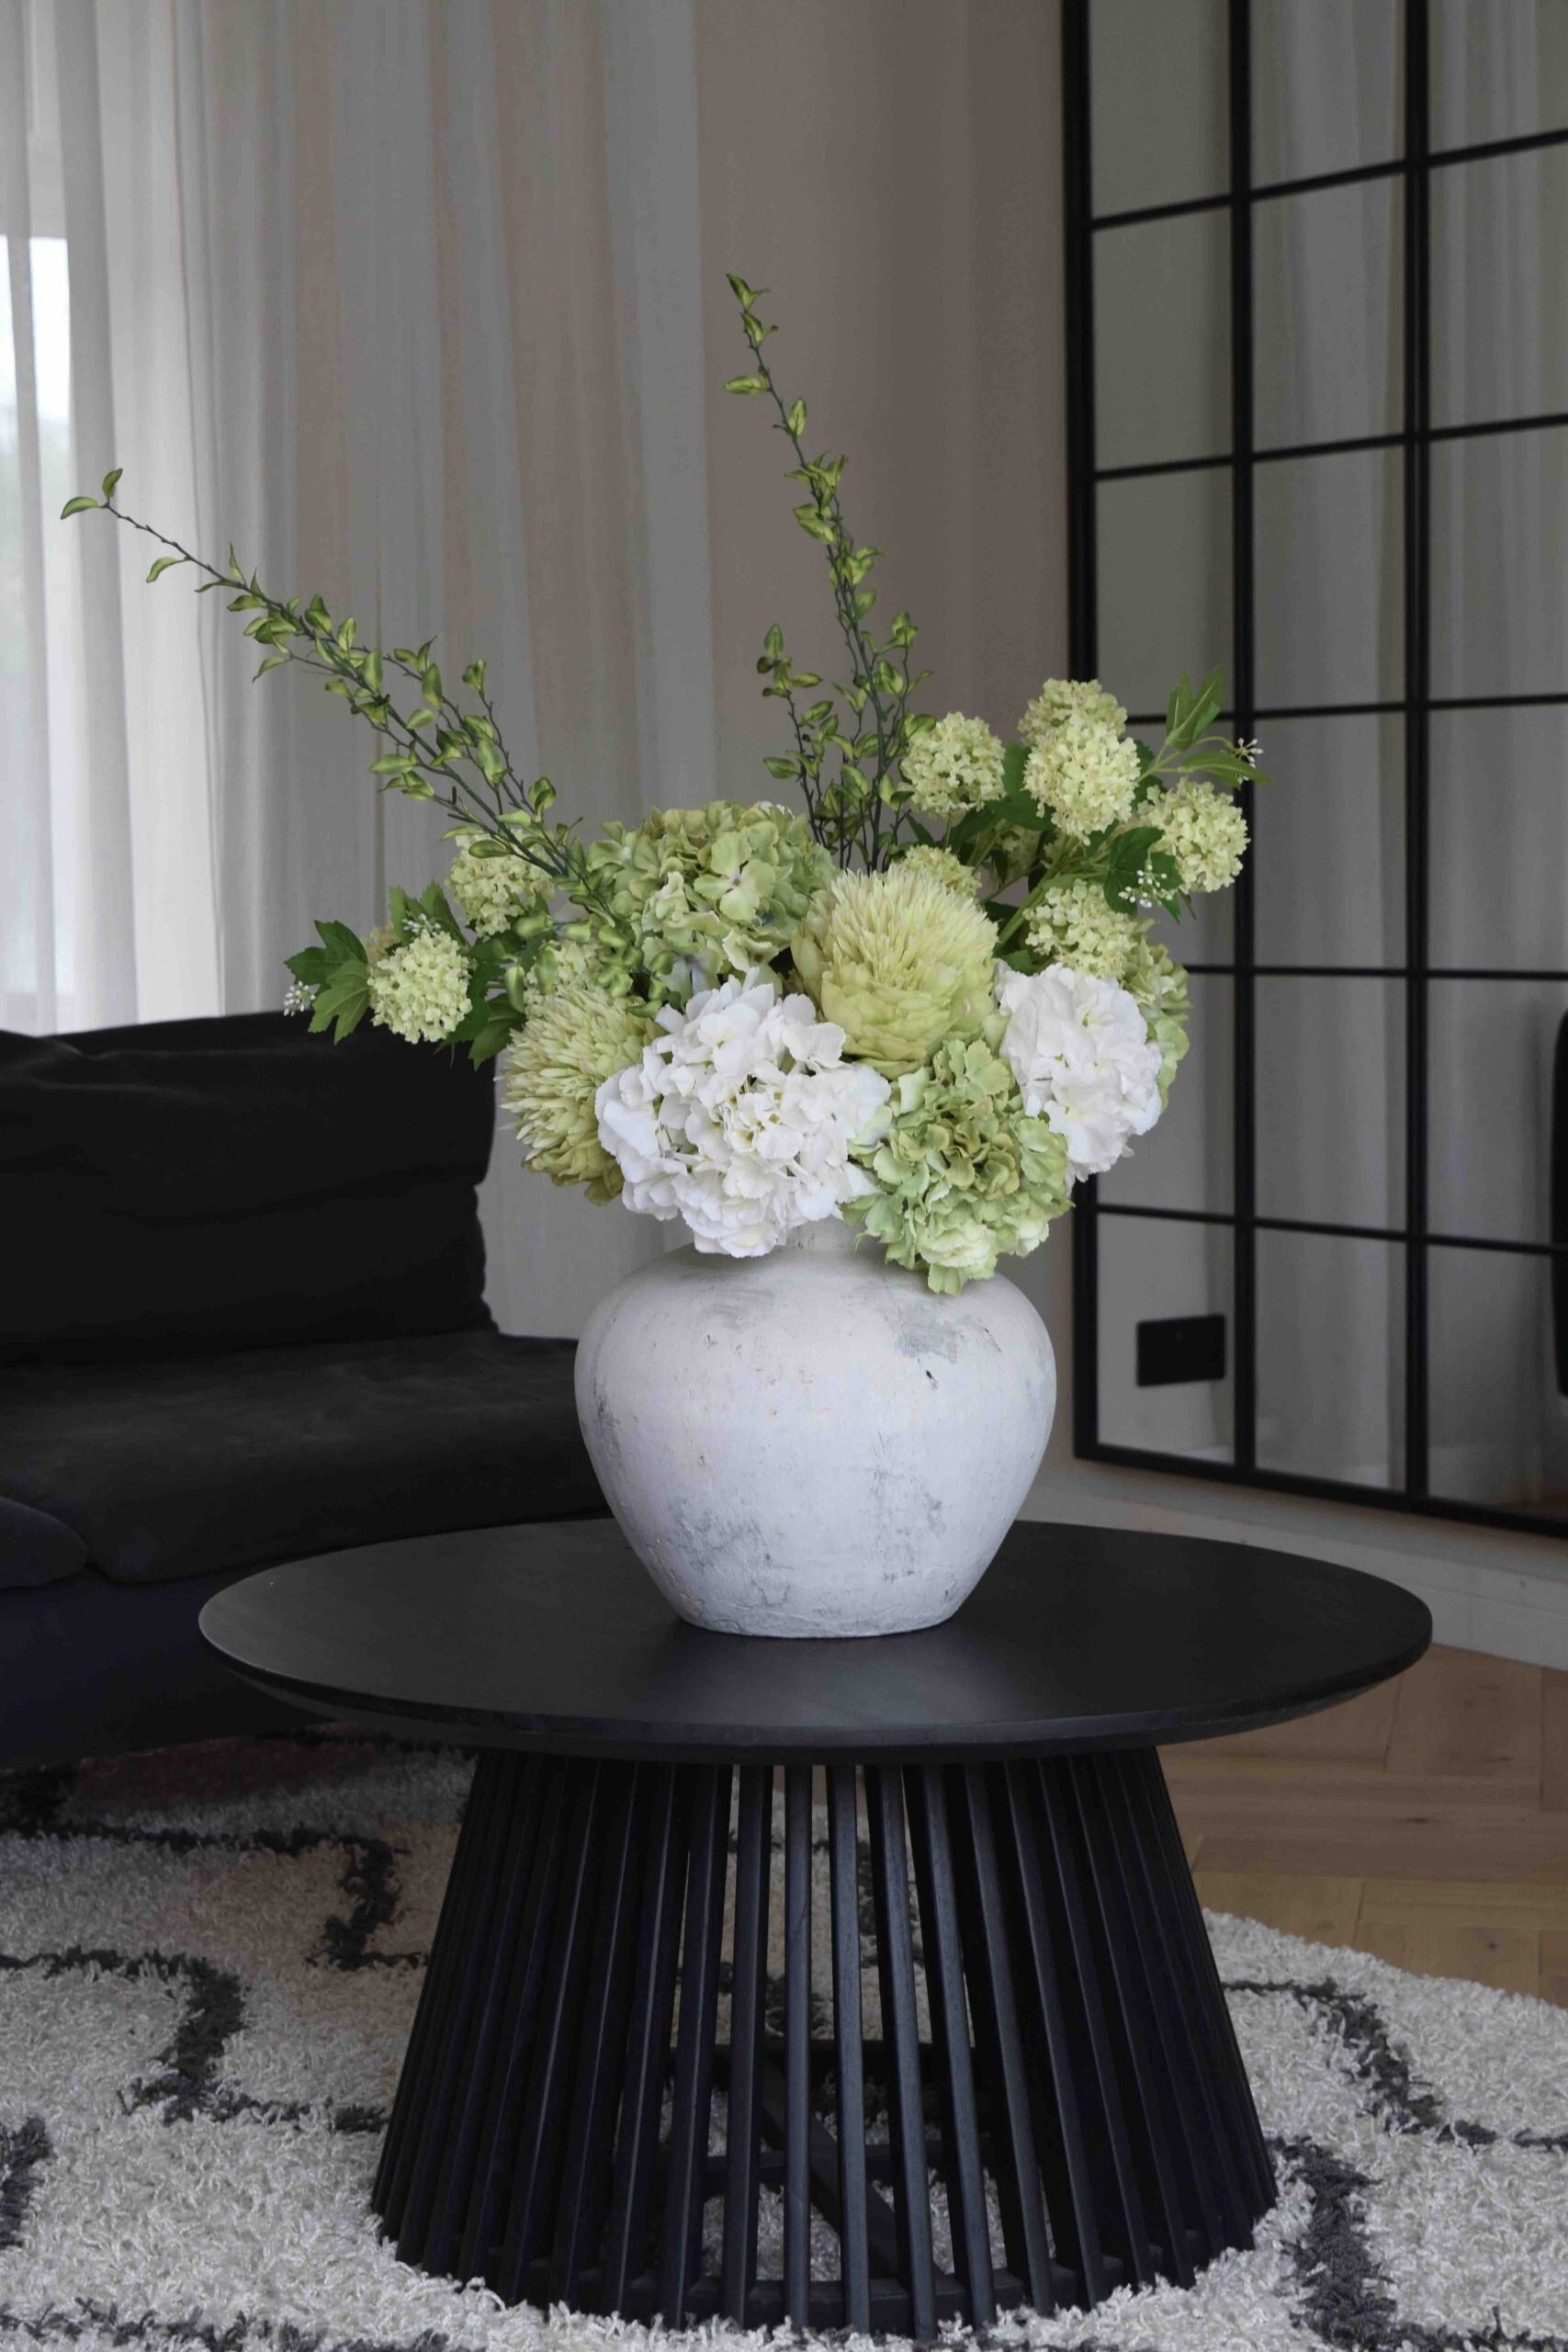 Composizione di fiori finti bianchi e verdi, fiori artificiali,  composizione di fiori di seta, fiori di ortensia -  Italia